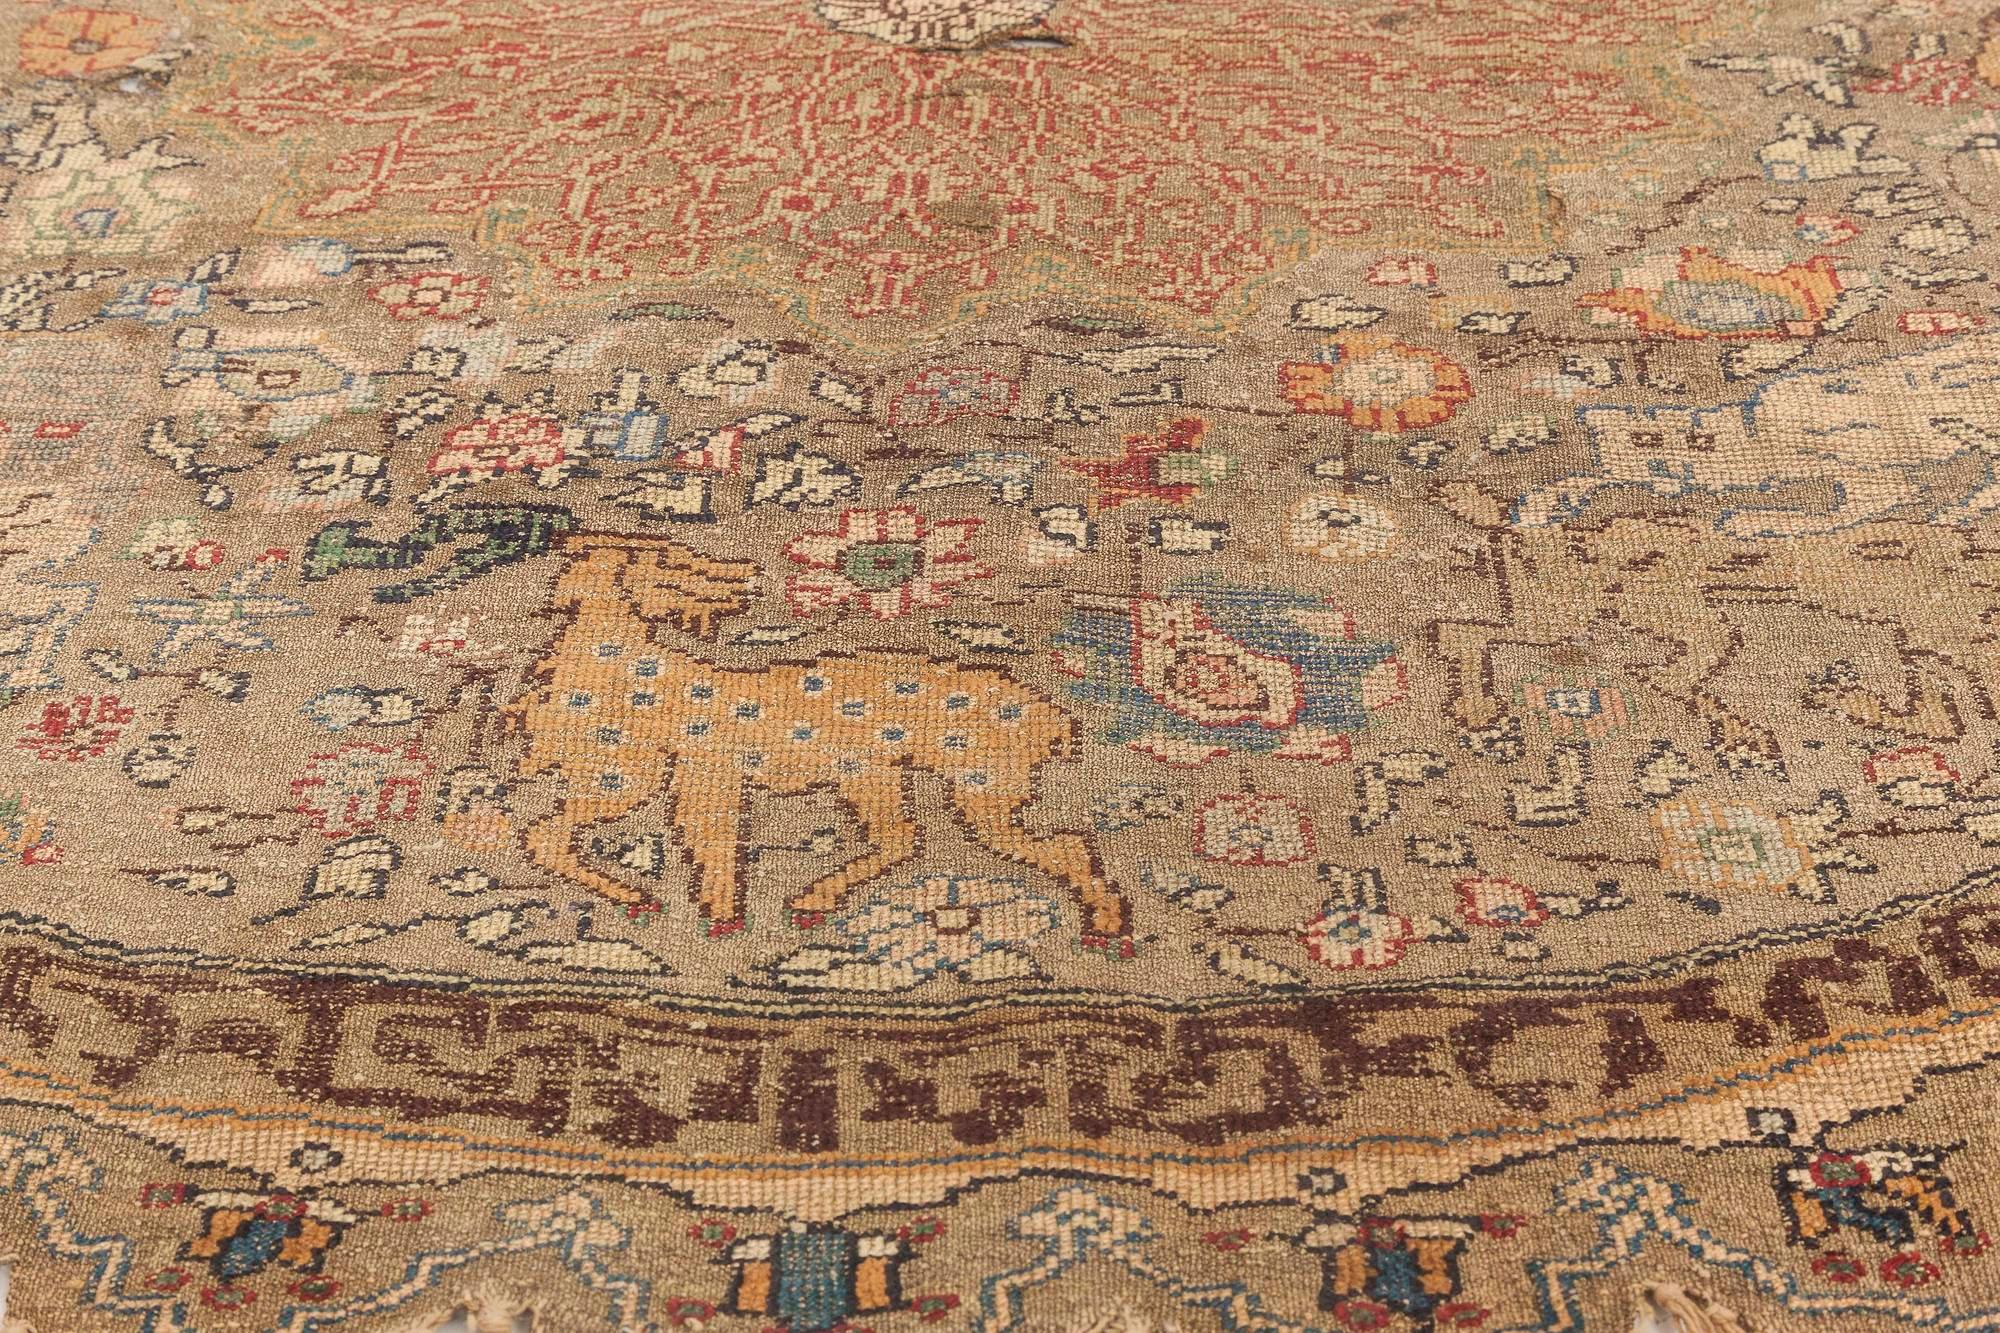 19th century round Turkish silk and metal thread rug
Size: 4'8